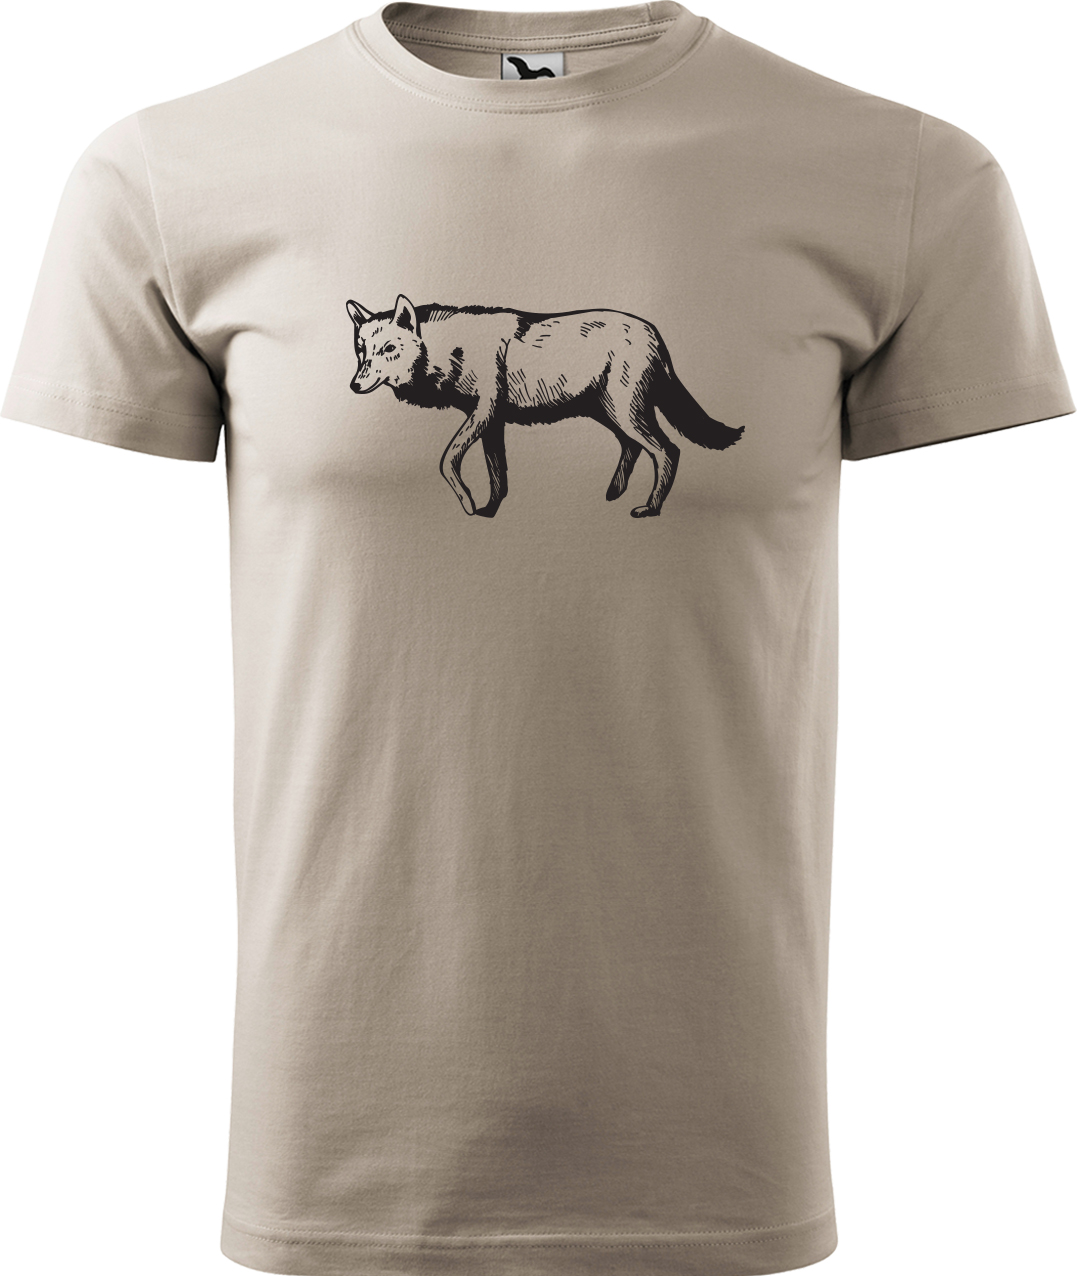 Pánské tričko s vlkem - Vlk Velikost: L, Barva: Ledově šedá (51), Střih: pánský